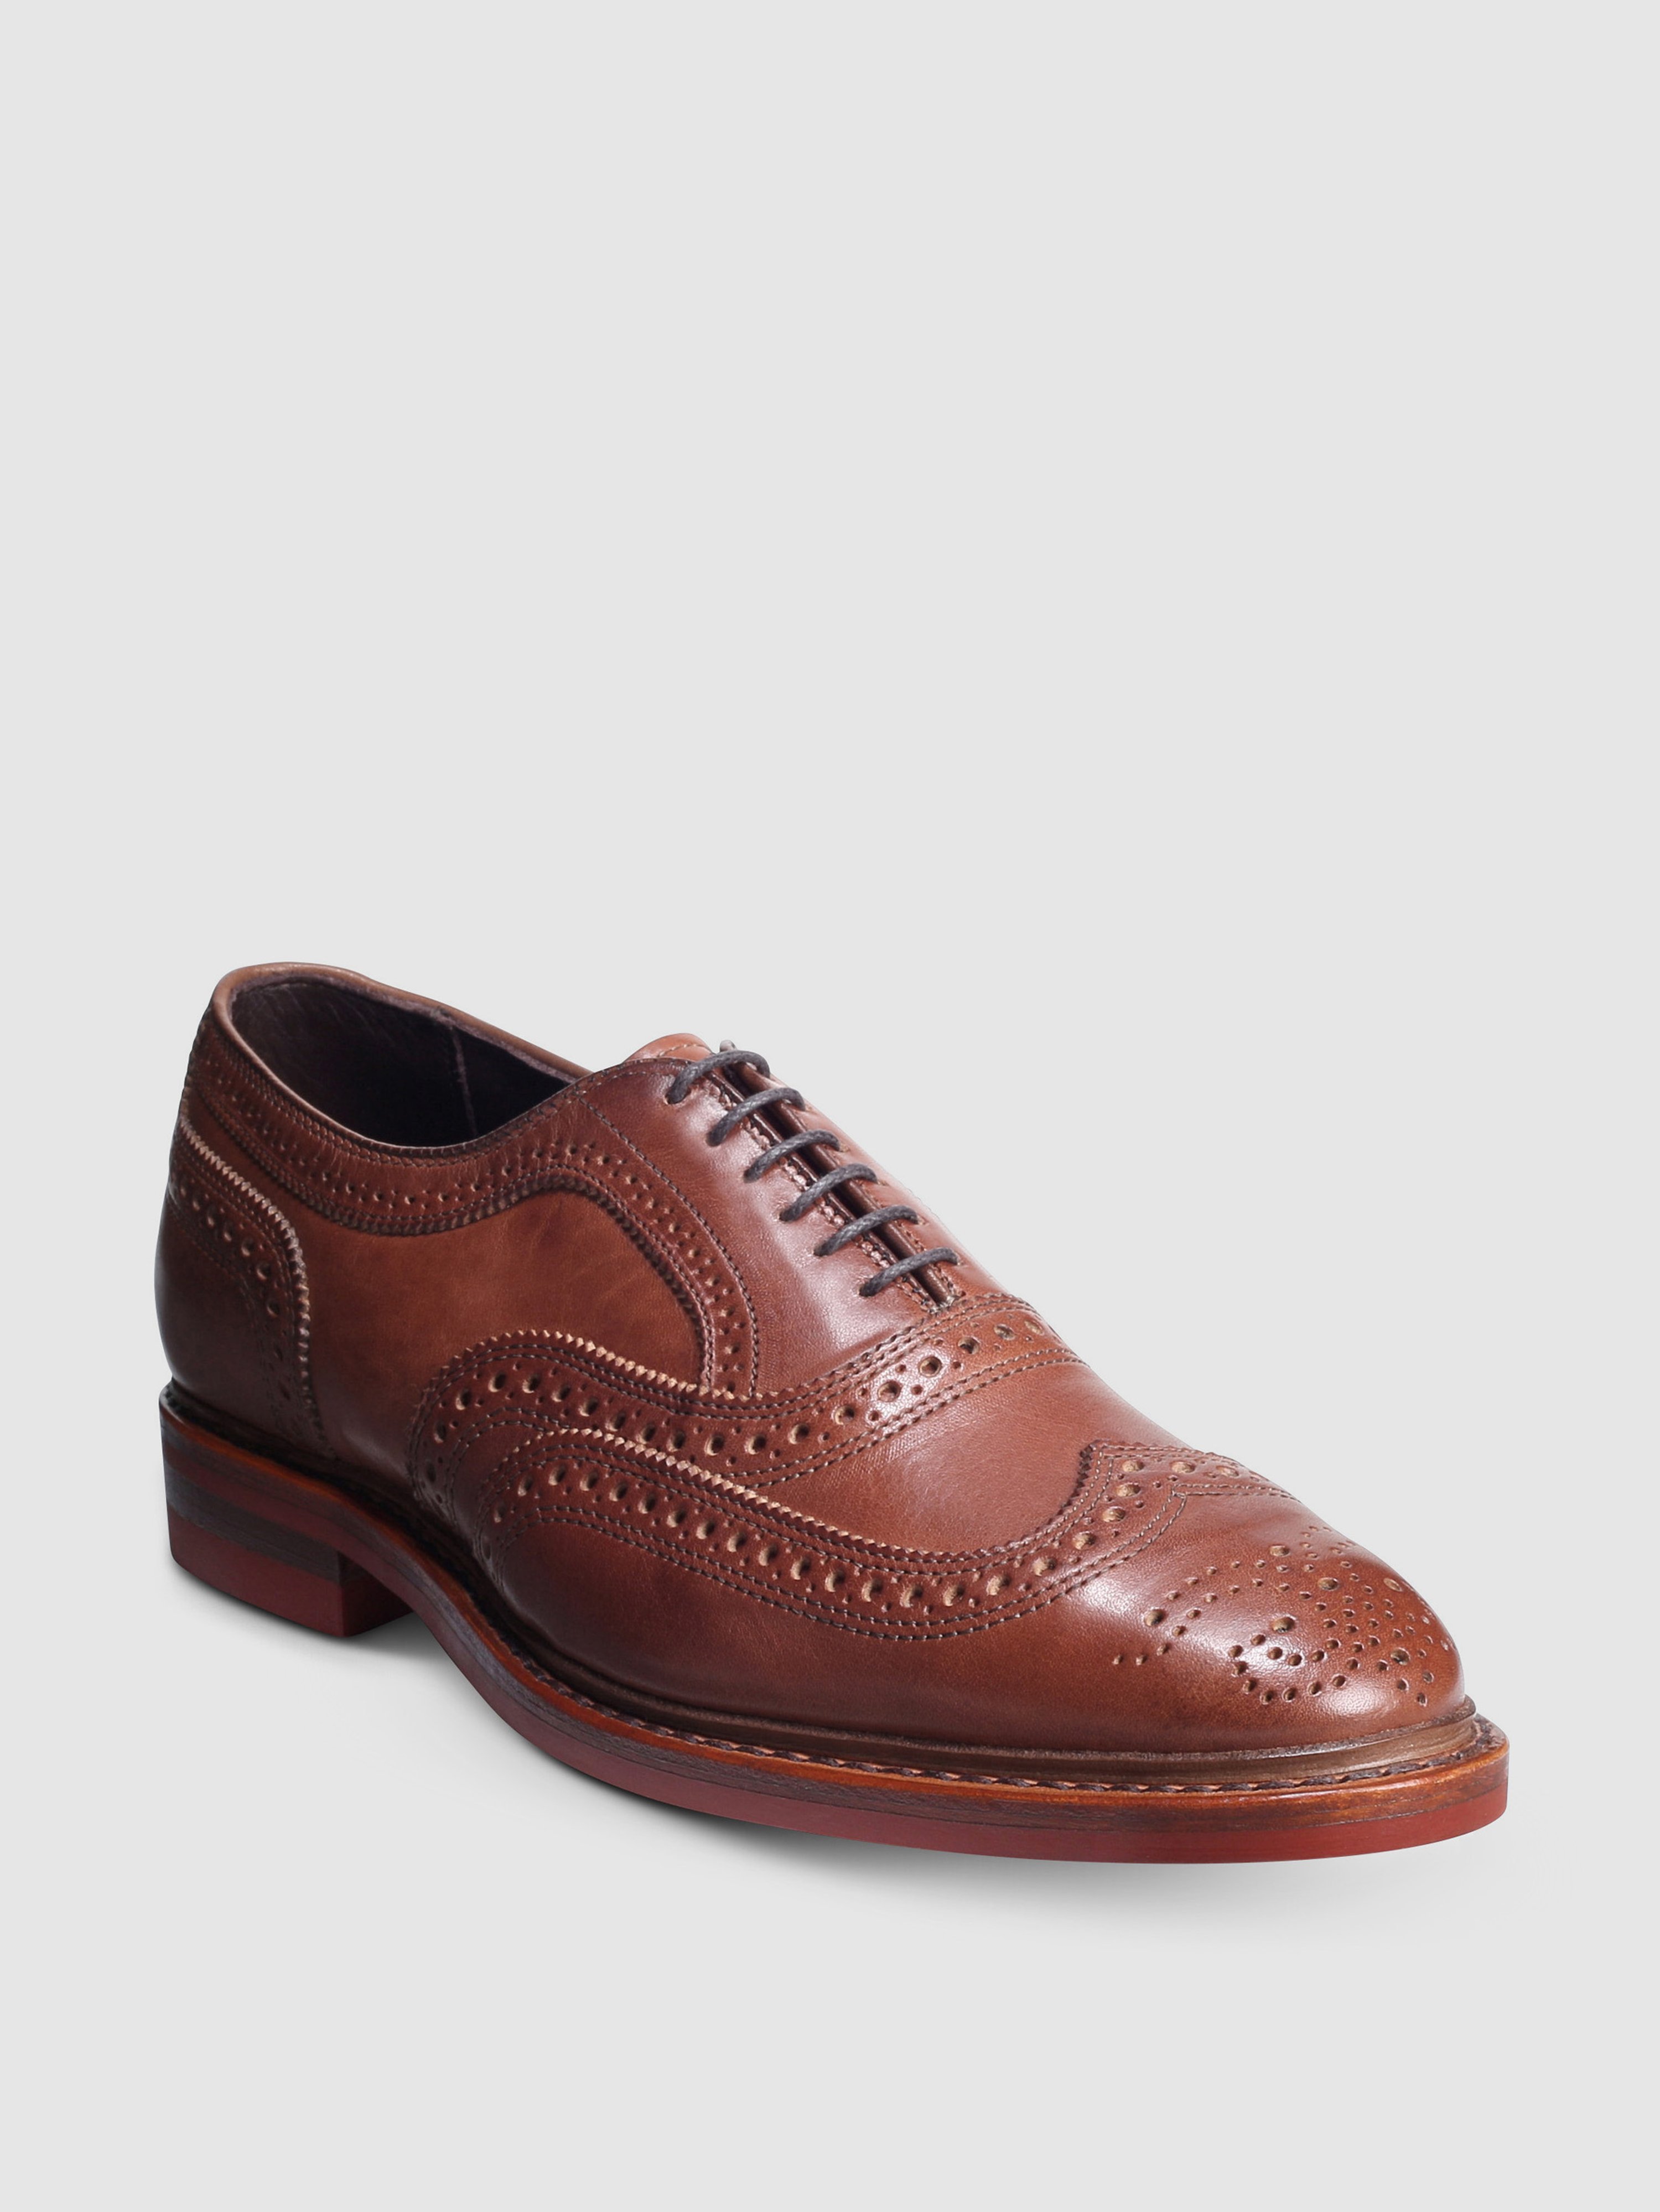 Allen Edmonds Mctavish Lace Up Oxford Shoe In Tan